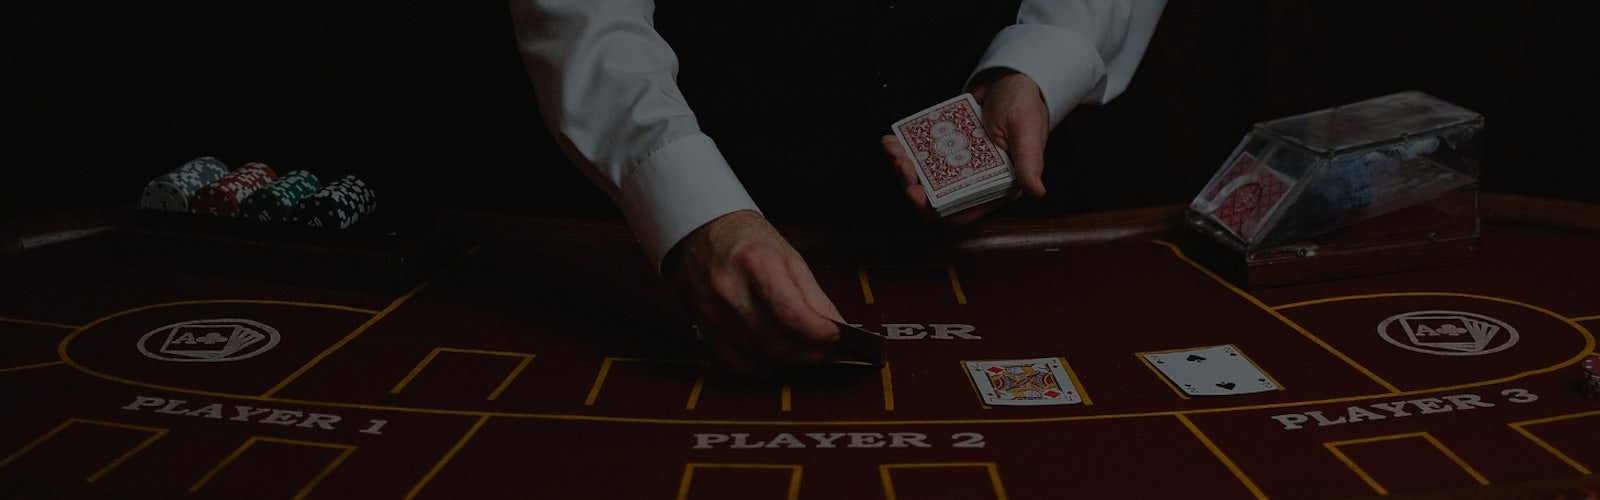 カジノで男性のディーラーがテーブルにトランプを並べている様子